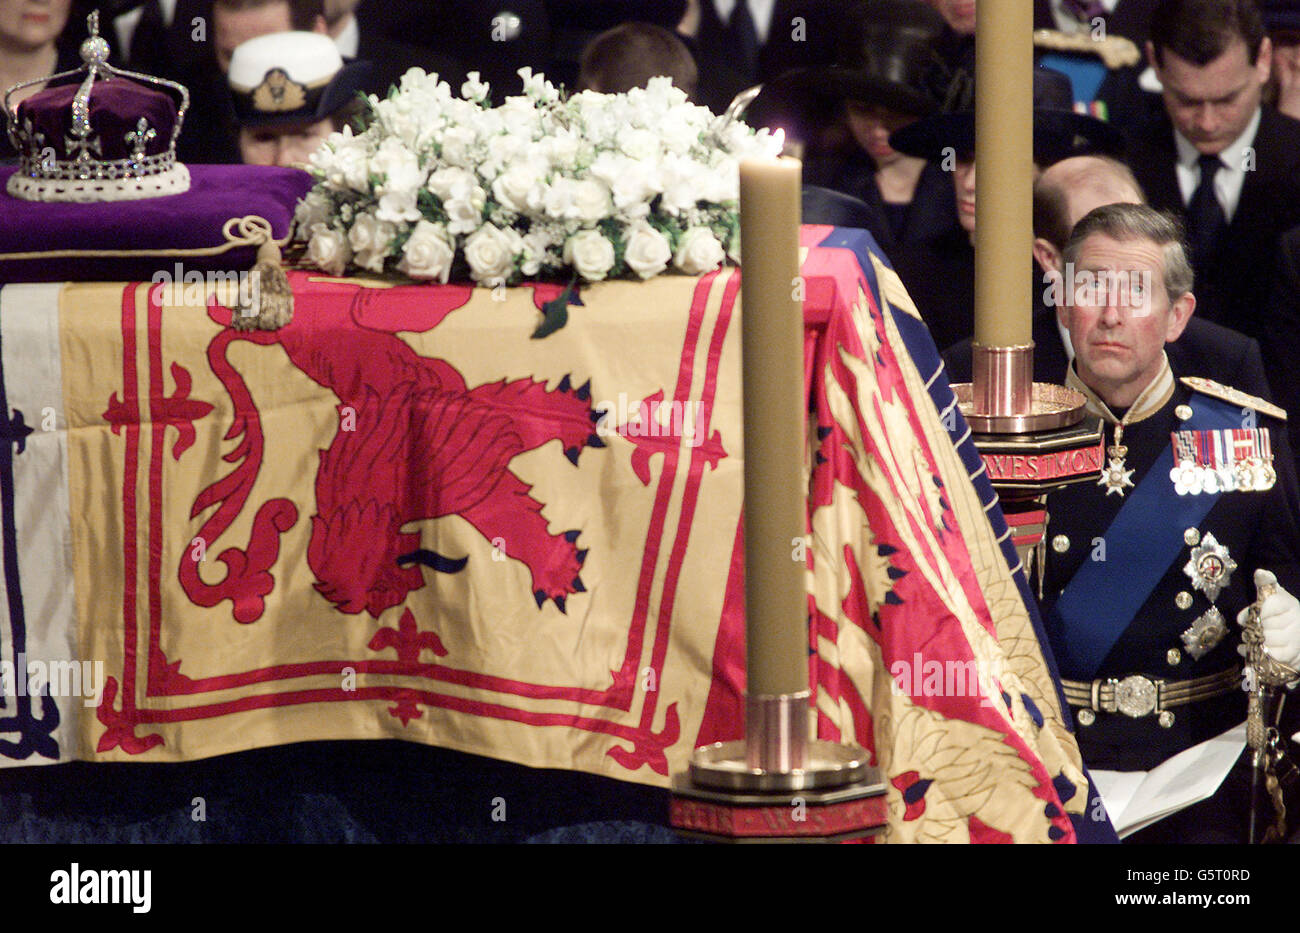 Der Prinz von Wales blickt auf den Sarg seiner Großmutter während des Trauergottes der Queen Mother im Zentrum Londons. Königliche Würdenträger und Politiker aus der ganzen Welt haben sich in Westminster Abbey versammelt, um ihren Respekt zu zollen. * an die Königin Mutter, die im Alter von 101 Jahren starb. Sie wird in St. George's Chapel in Windsor neben ihrem Ehemann King George VI. Eingearbeitet Stockfoto